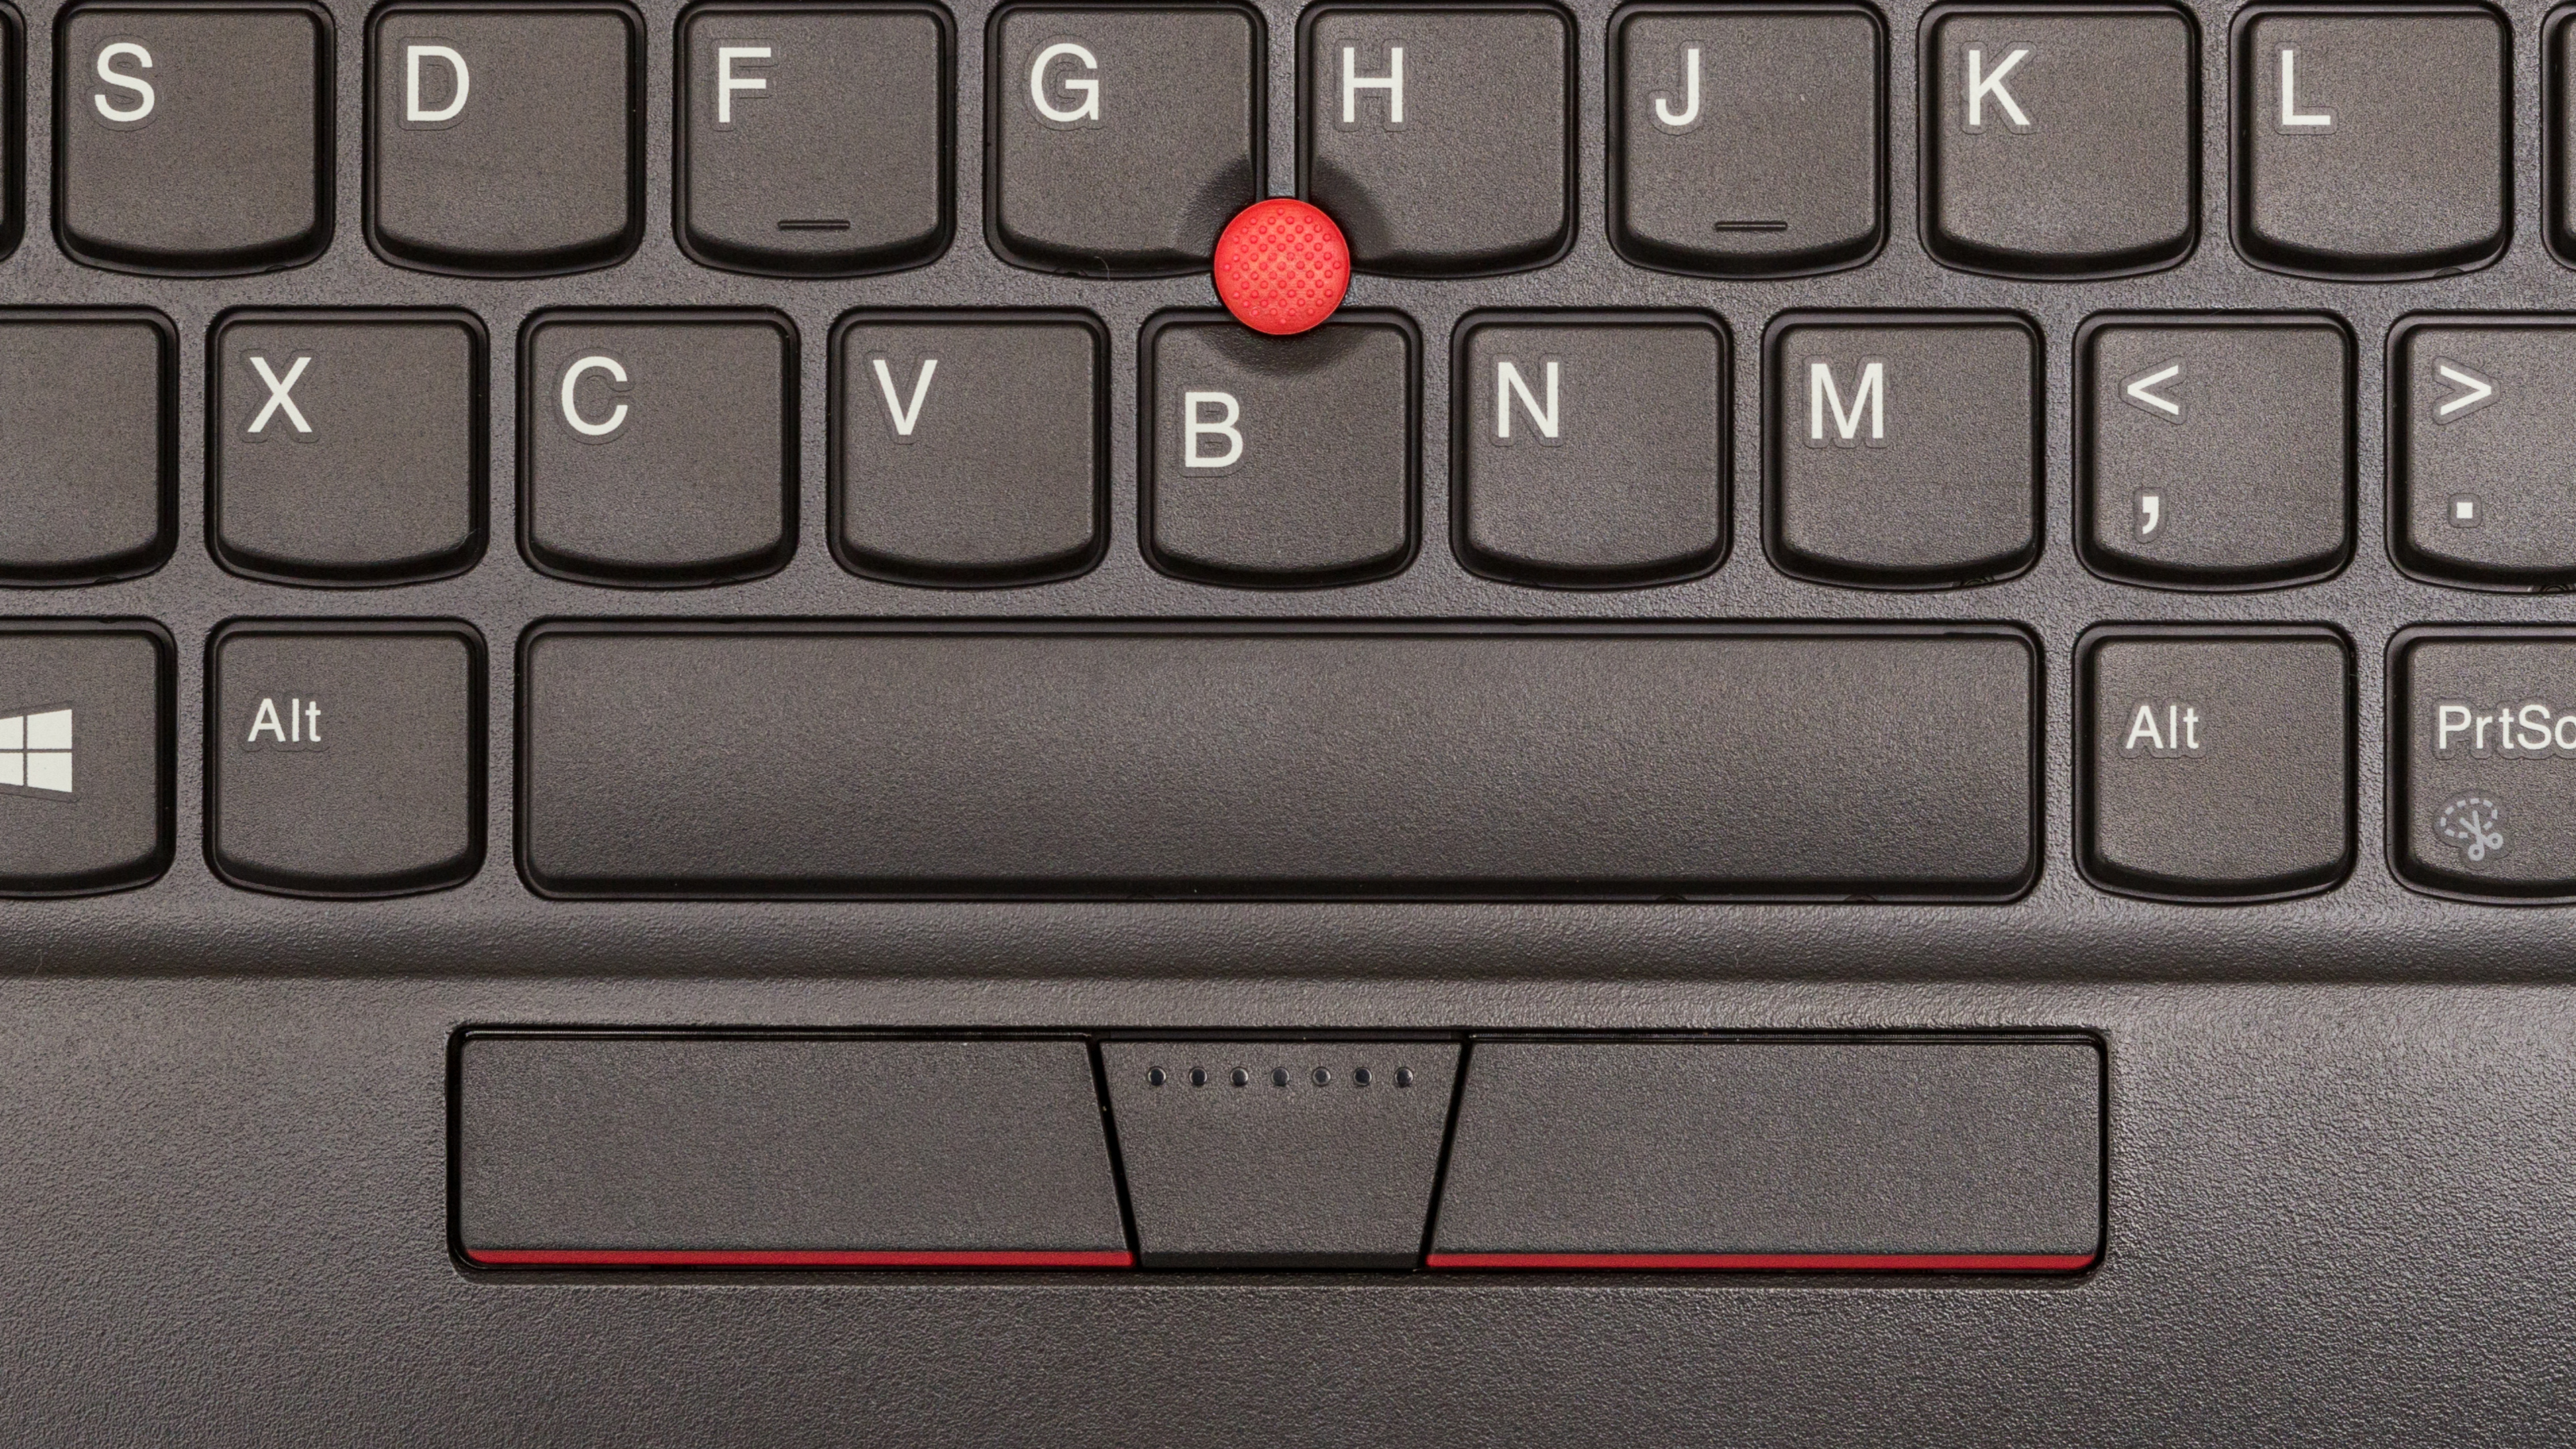 ThinkPad TrackPoint Keyboard II